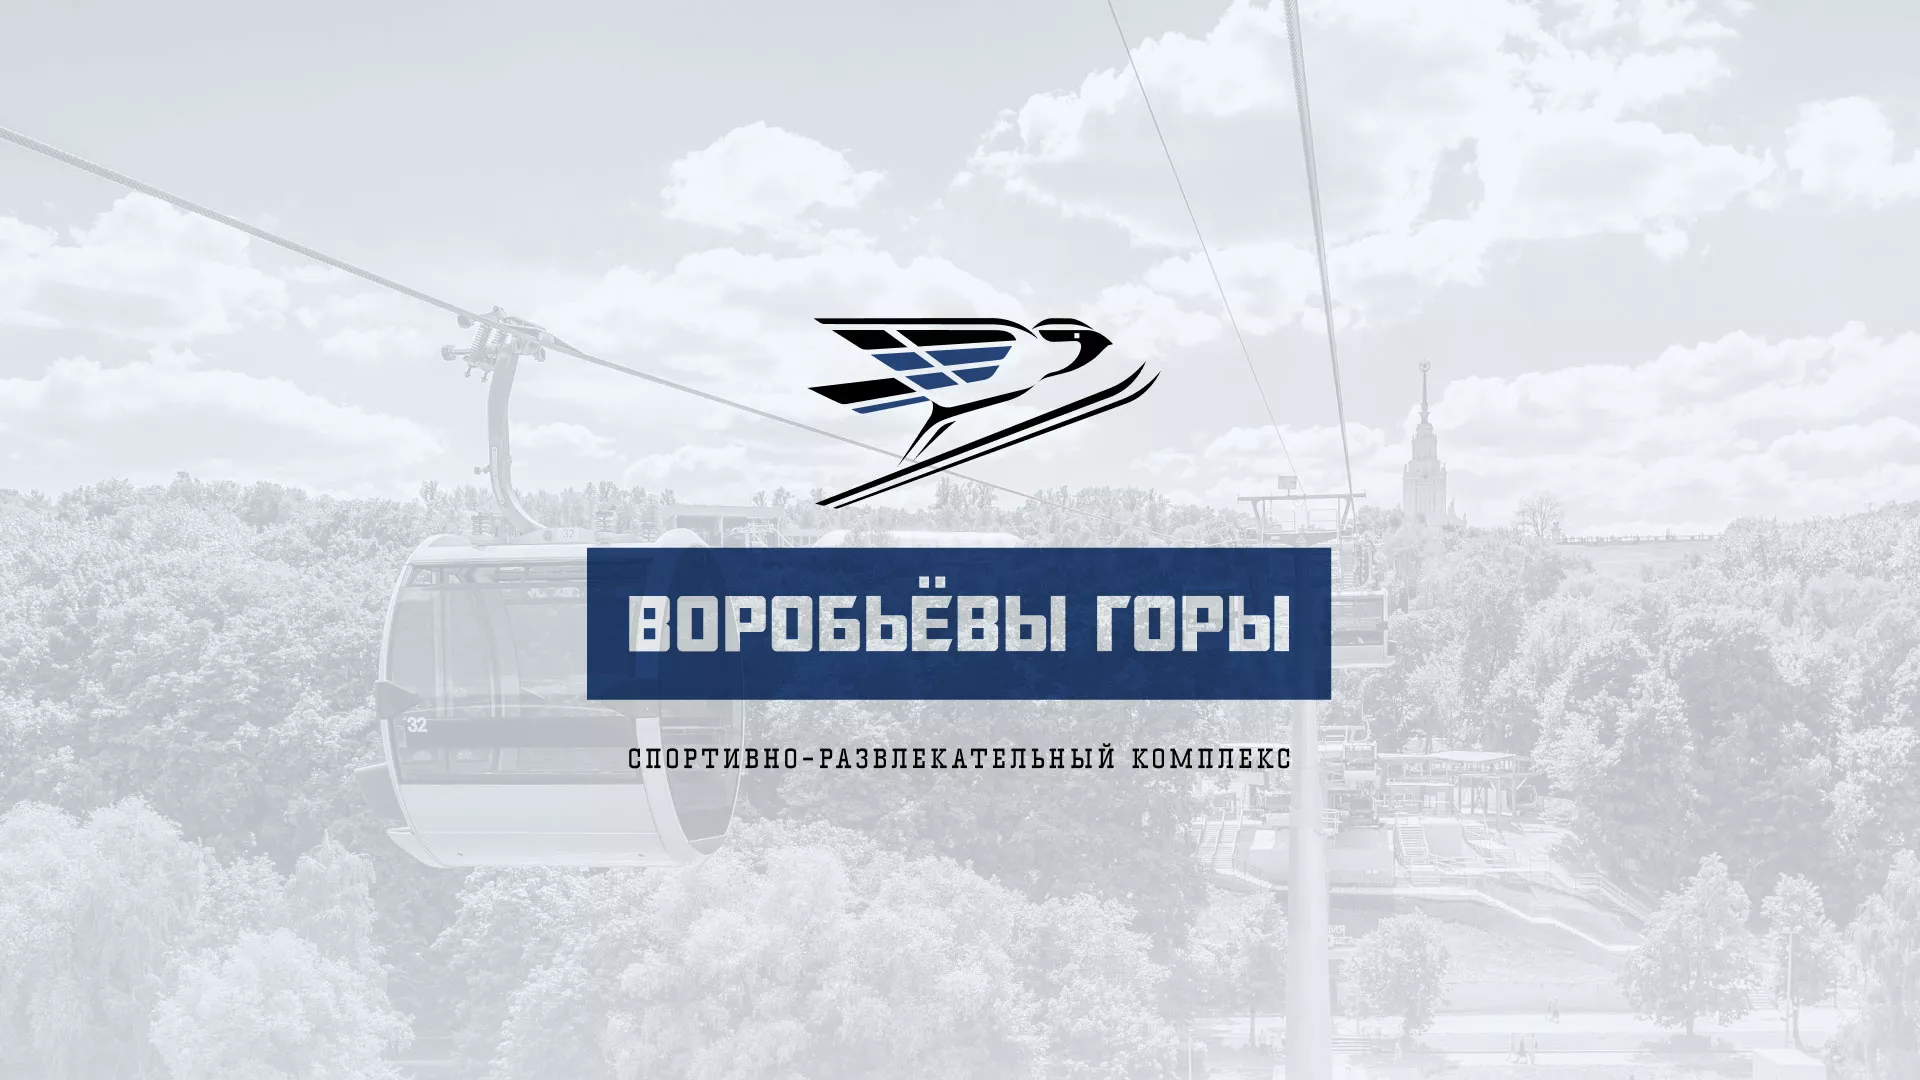 Разработка сайта в Балаково для спортивно-развлекательного комплекса «Воробьёвы горы»